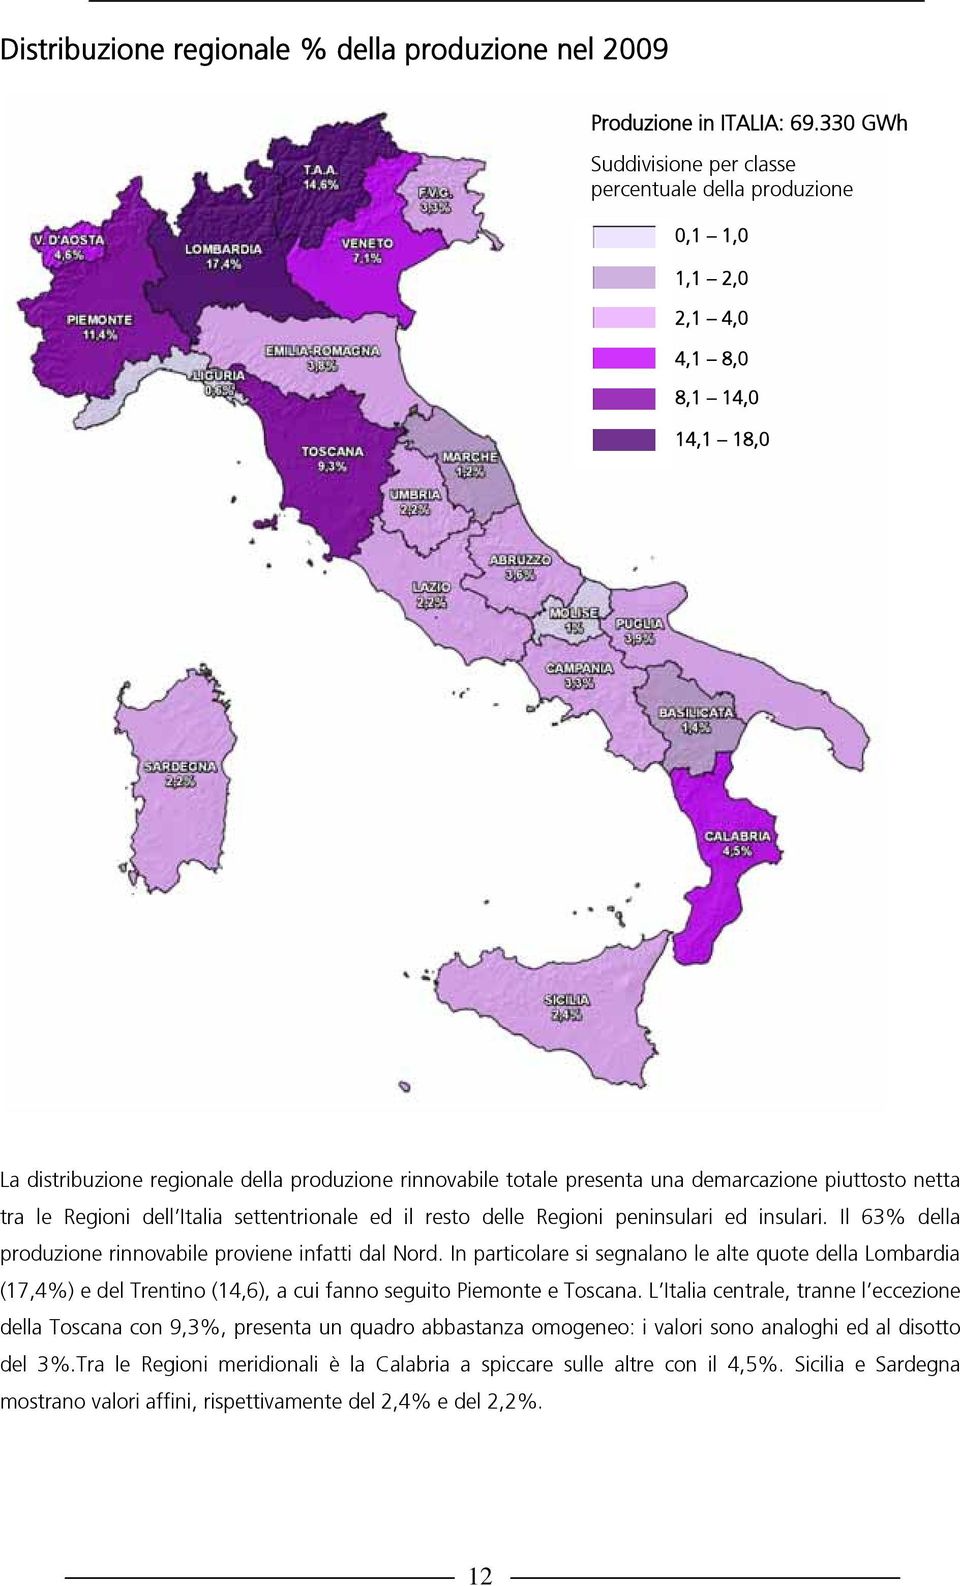 demarcazione piuttosto netta tra le Regioni dell Italia settentrionale ed il resto delle Regioni peninsulari ed insulari. Il 63% della produzione rinnovabile proviene infatti dal Nord.